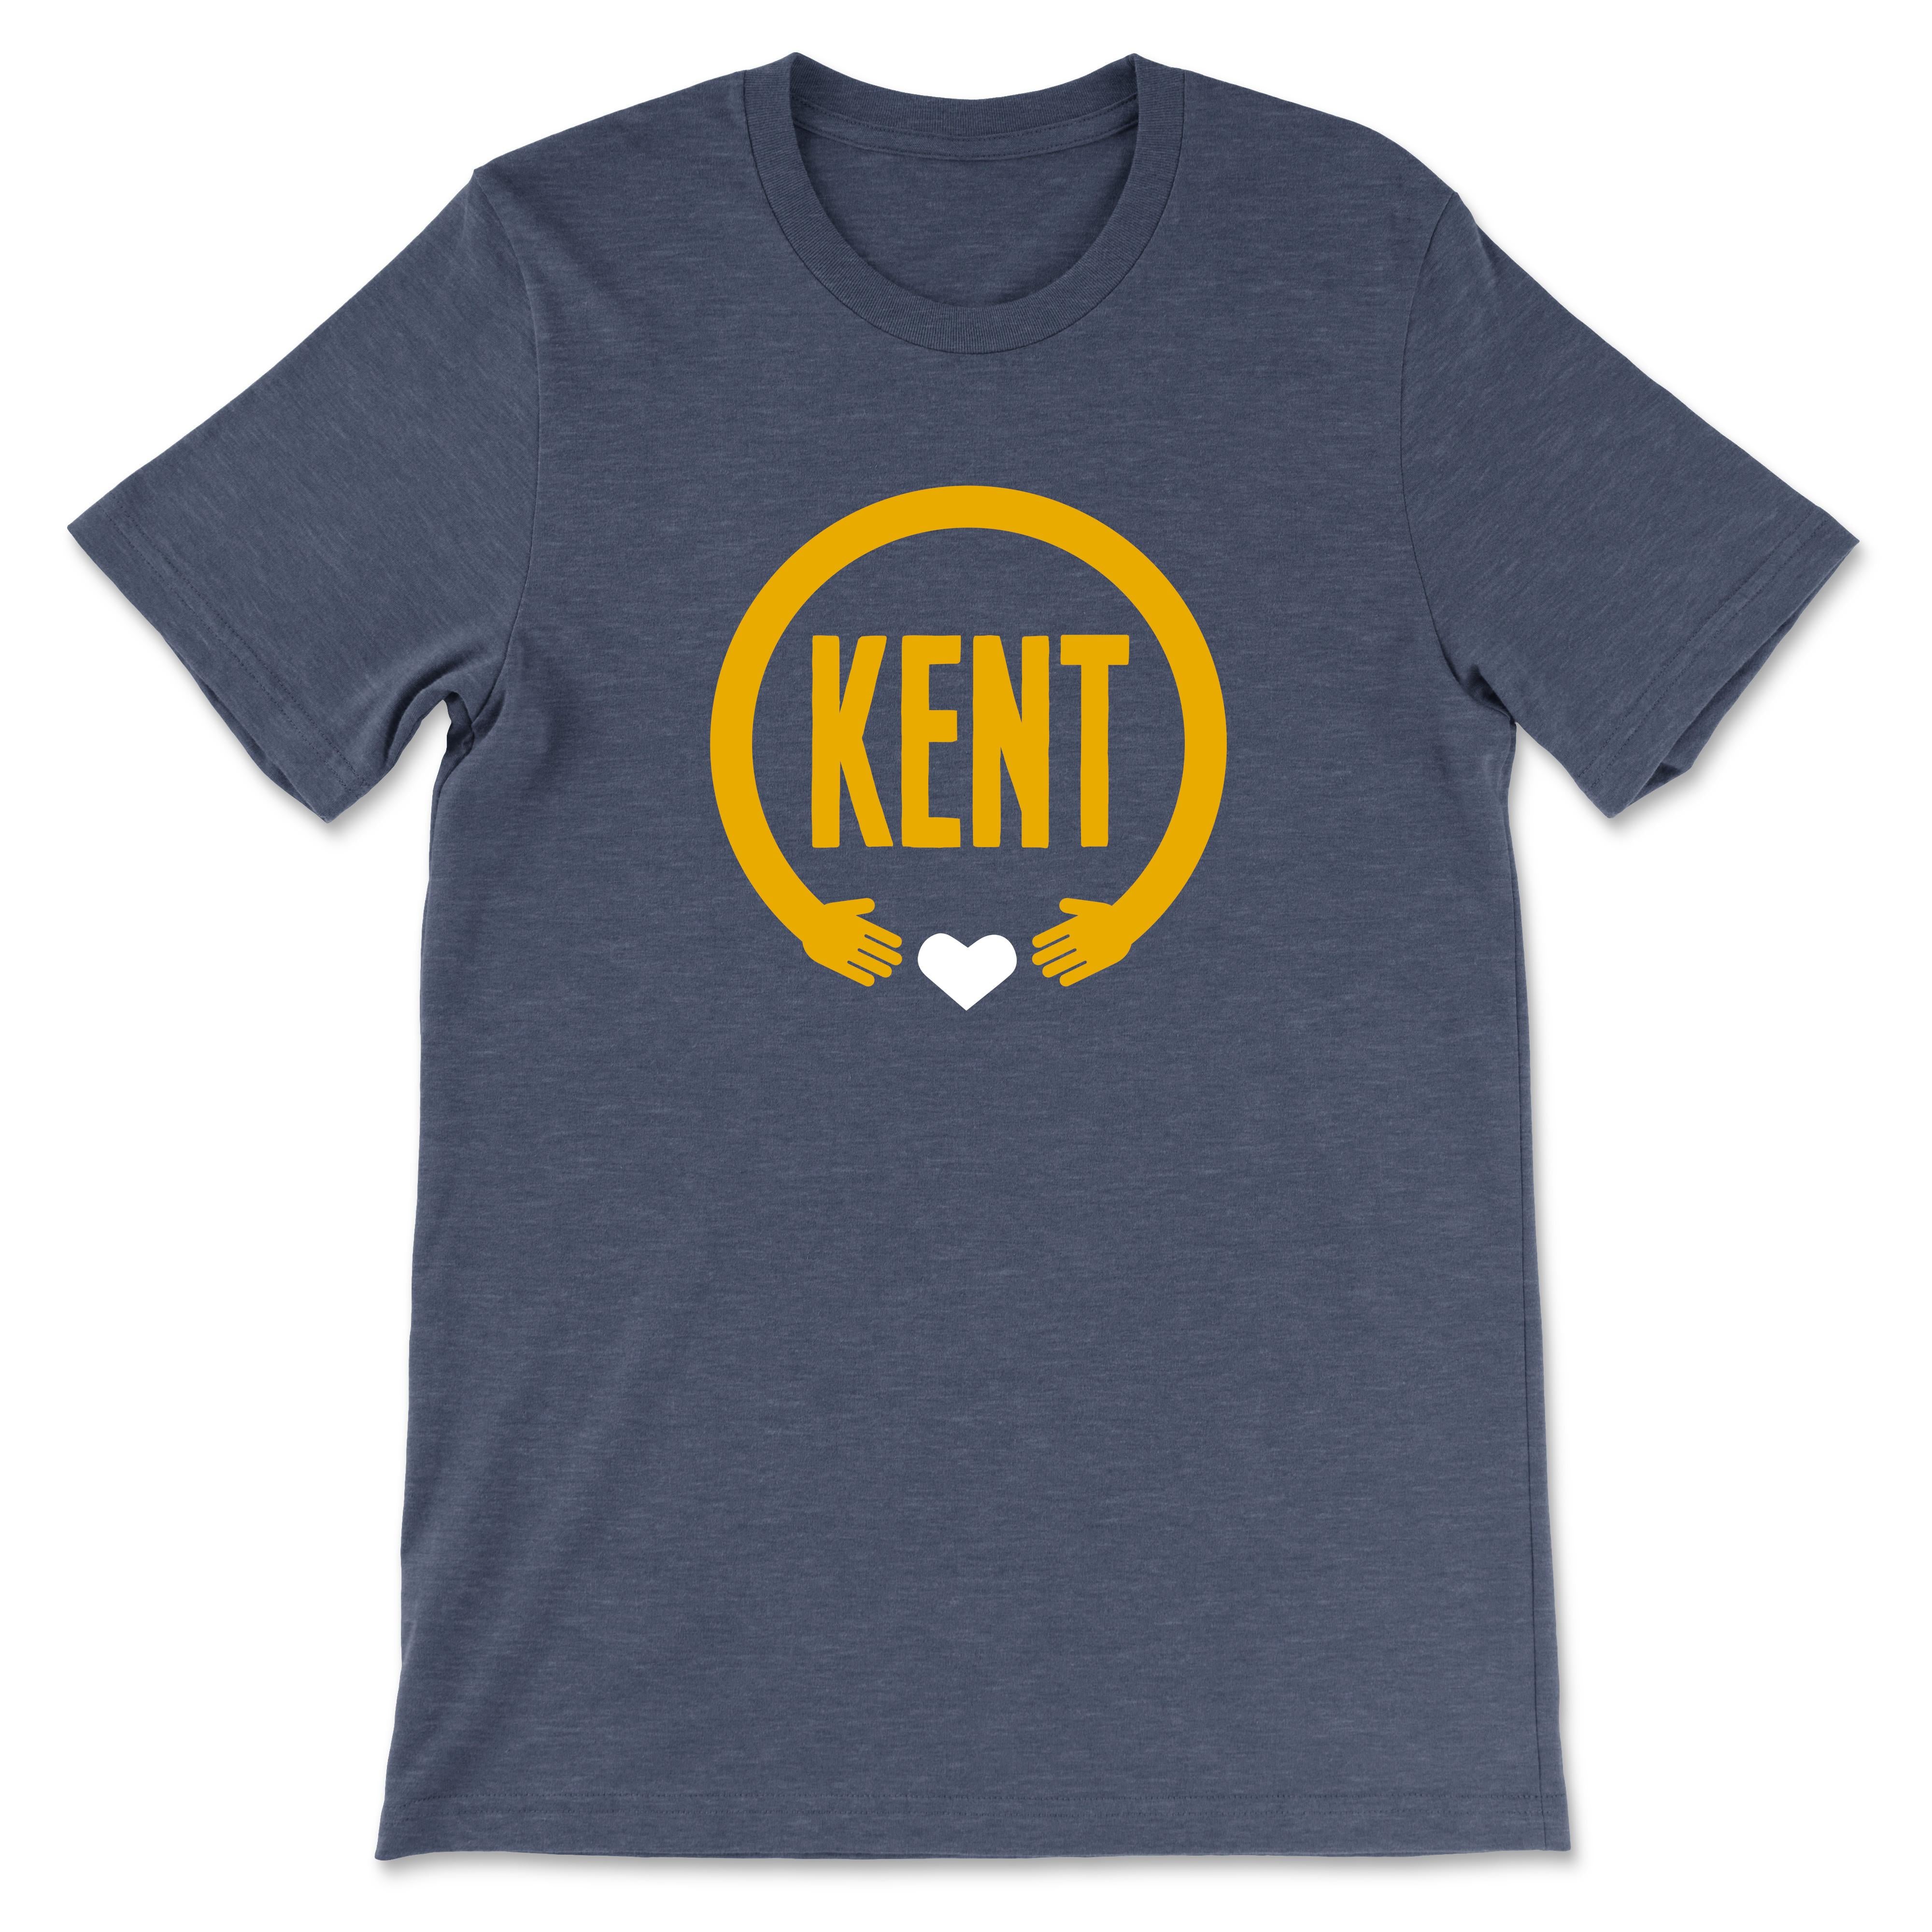 Kent Heart Hands T-Shirt